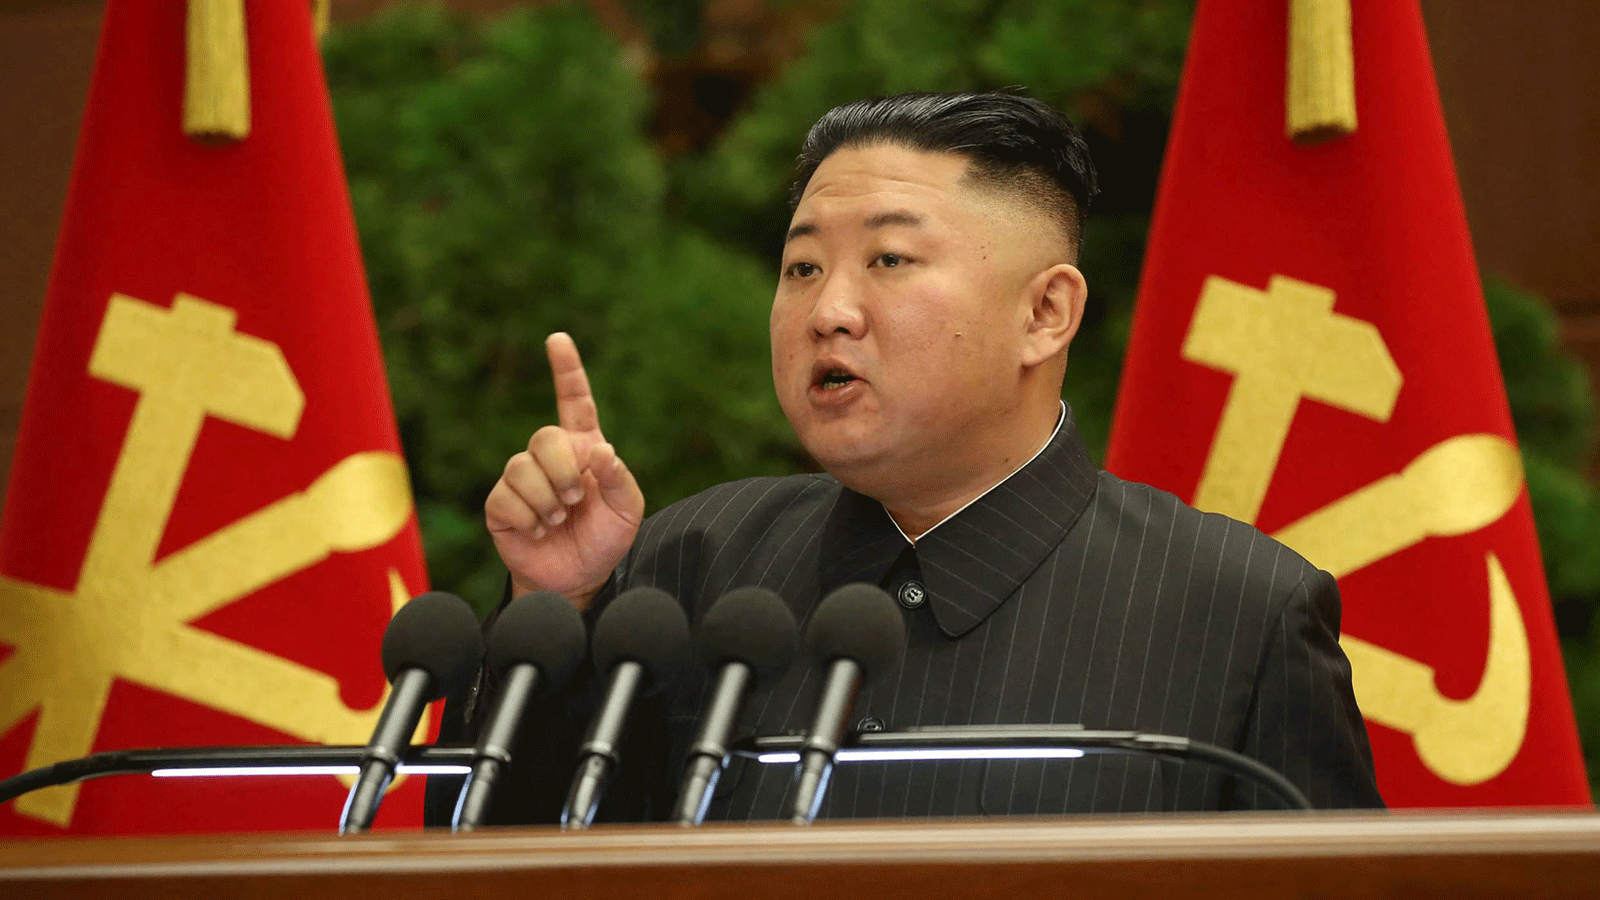 زعيم كوريا الشمالية كيم جونغ-أون في اجتماع قيادة الحزب في بيونغ يانغ يوم الثلاثاء.29 حزيران/ يونيو 2021